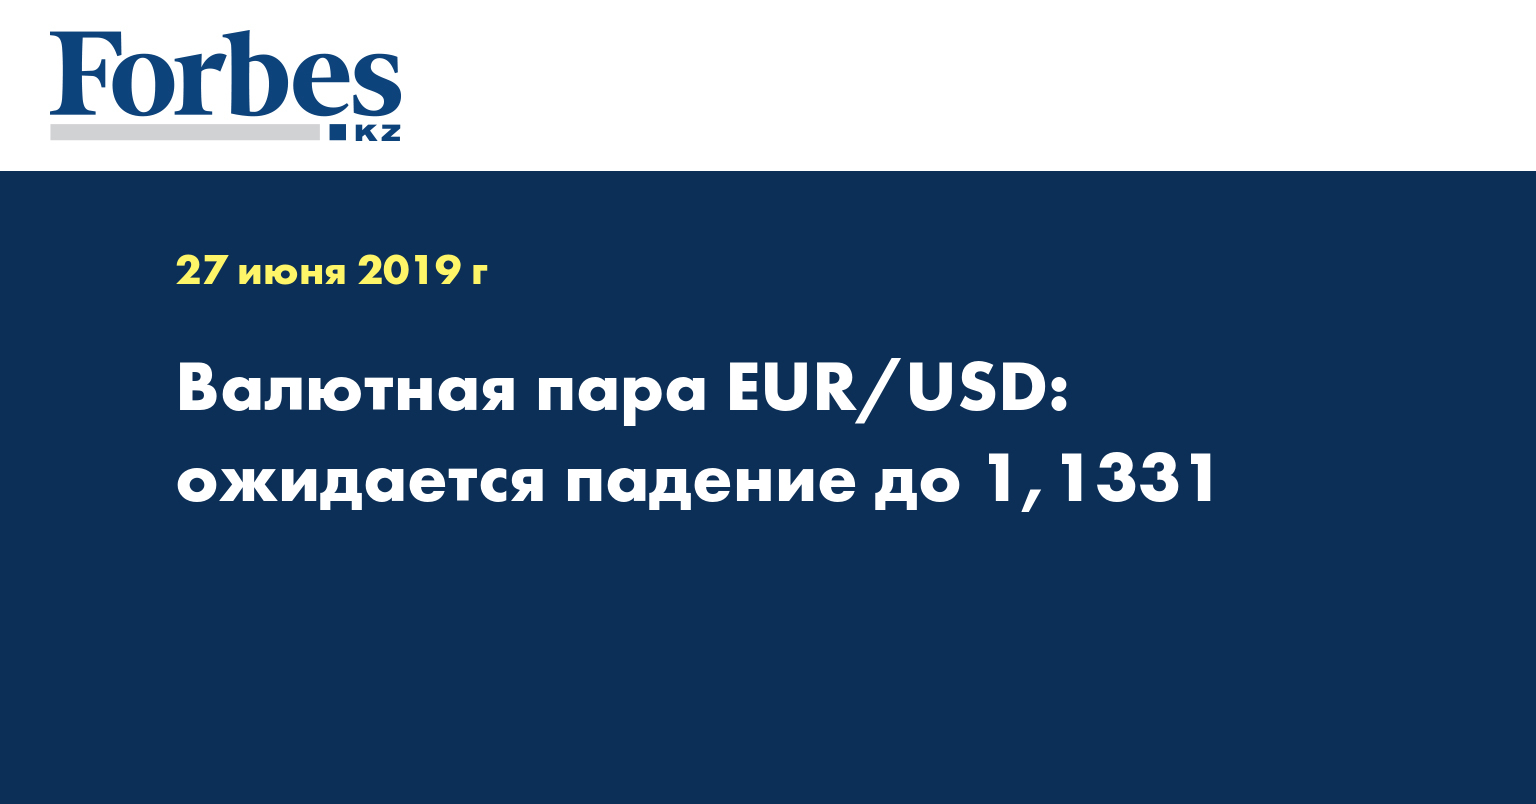 Валютная пара EUR/USD: ожидается падение до 1,1331